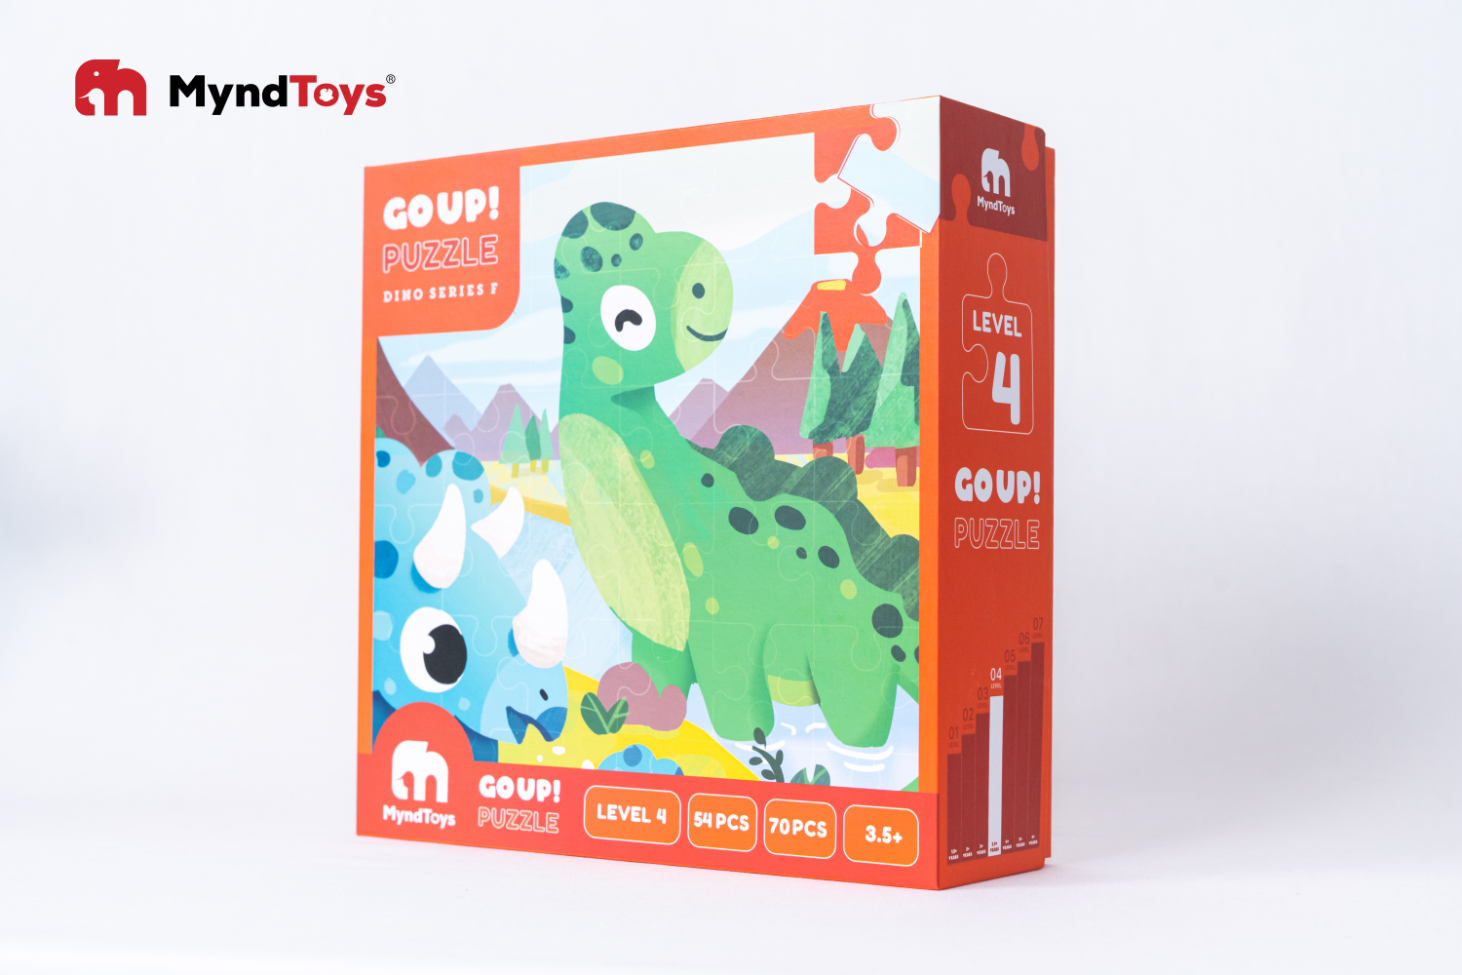 Đồ chơi xếp hình MyndToys - Go up Puzzle Level 4 - Dino Series F